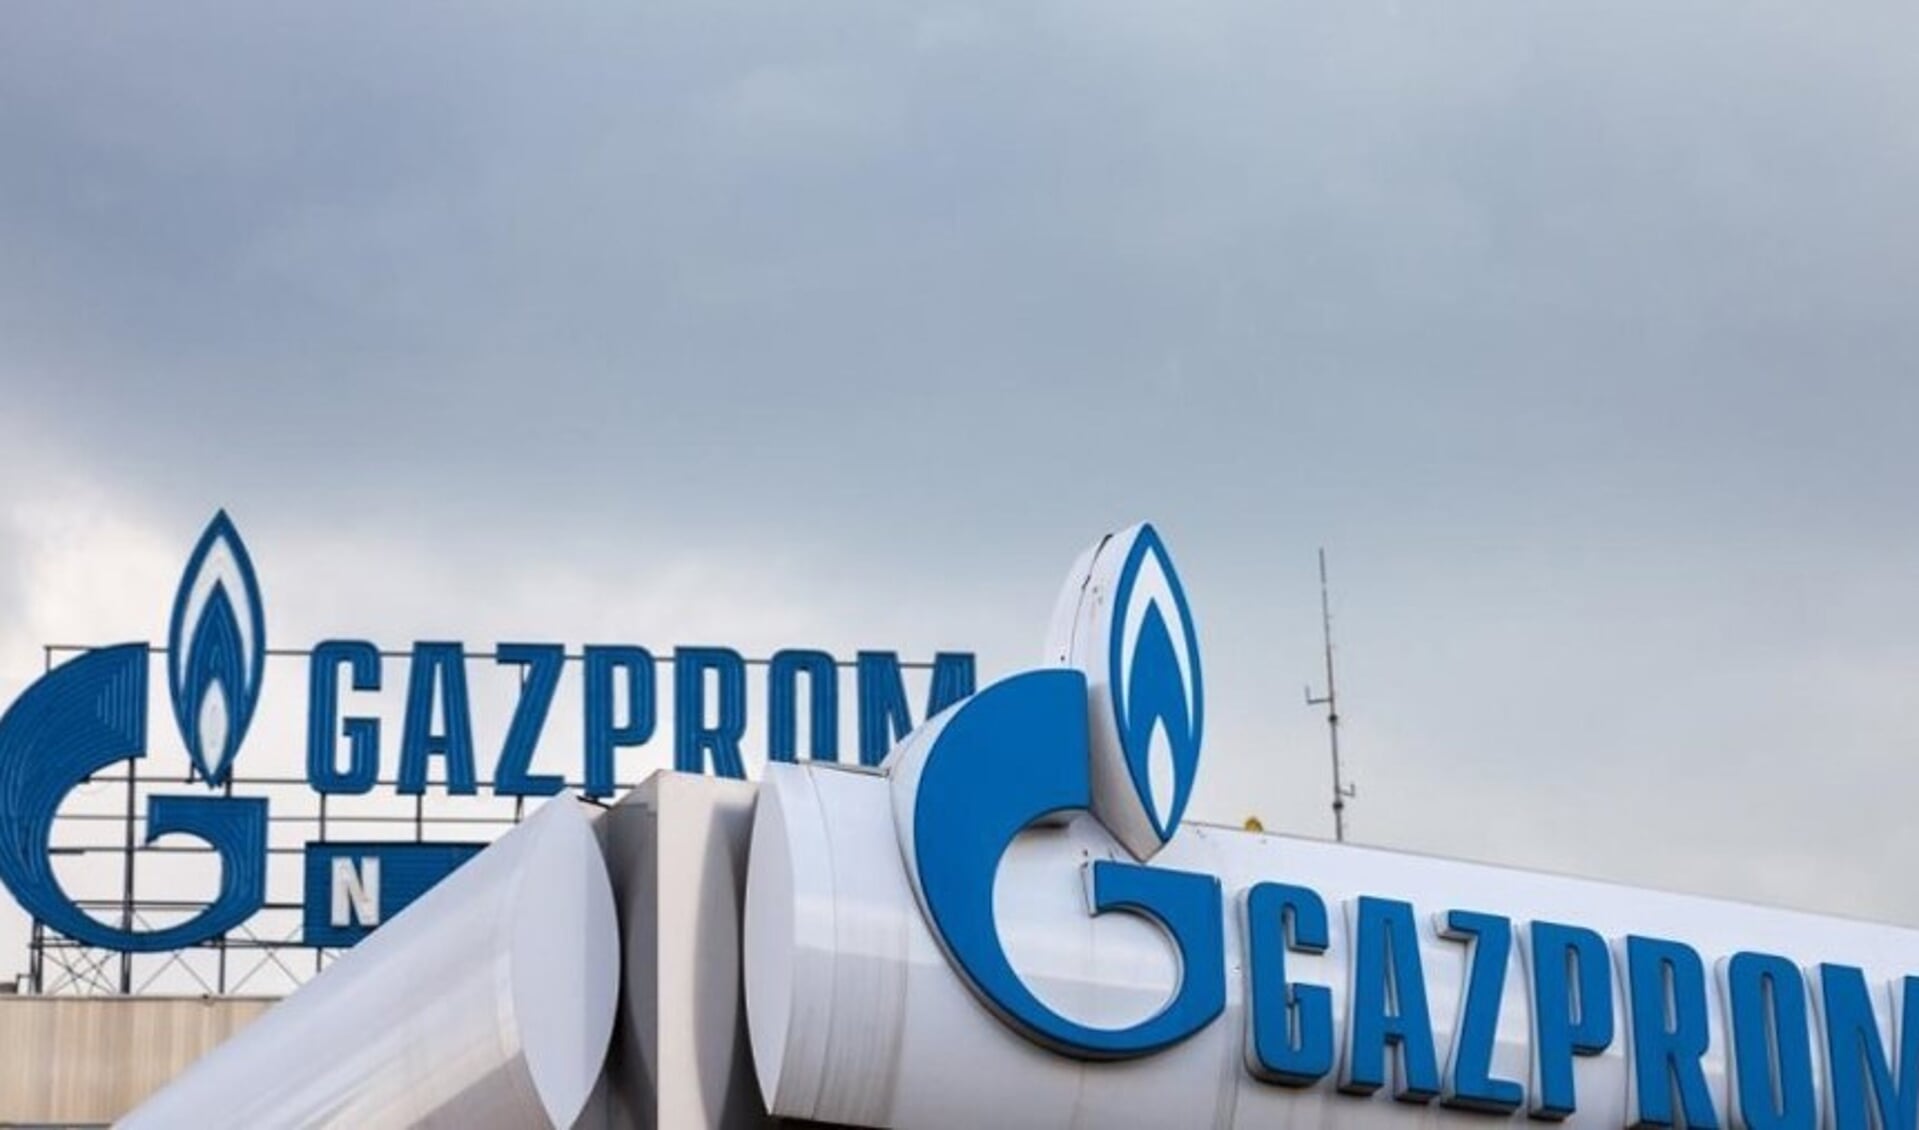 De gemeente wil af van het contract met Gazprom en onderzoekt de mogelijkheden